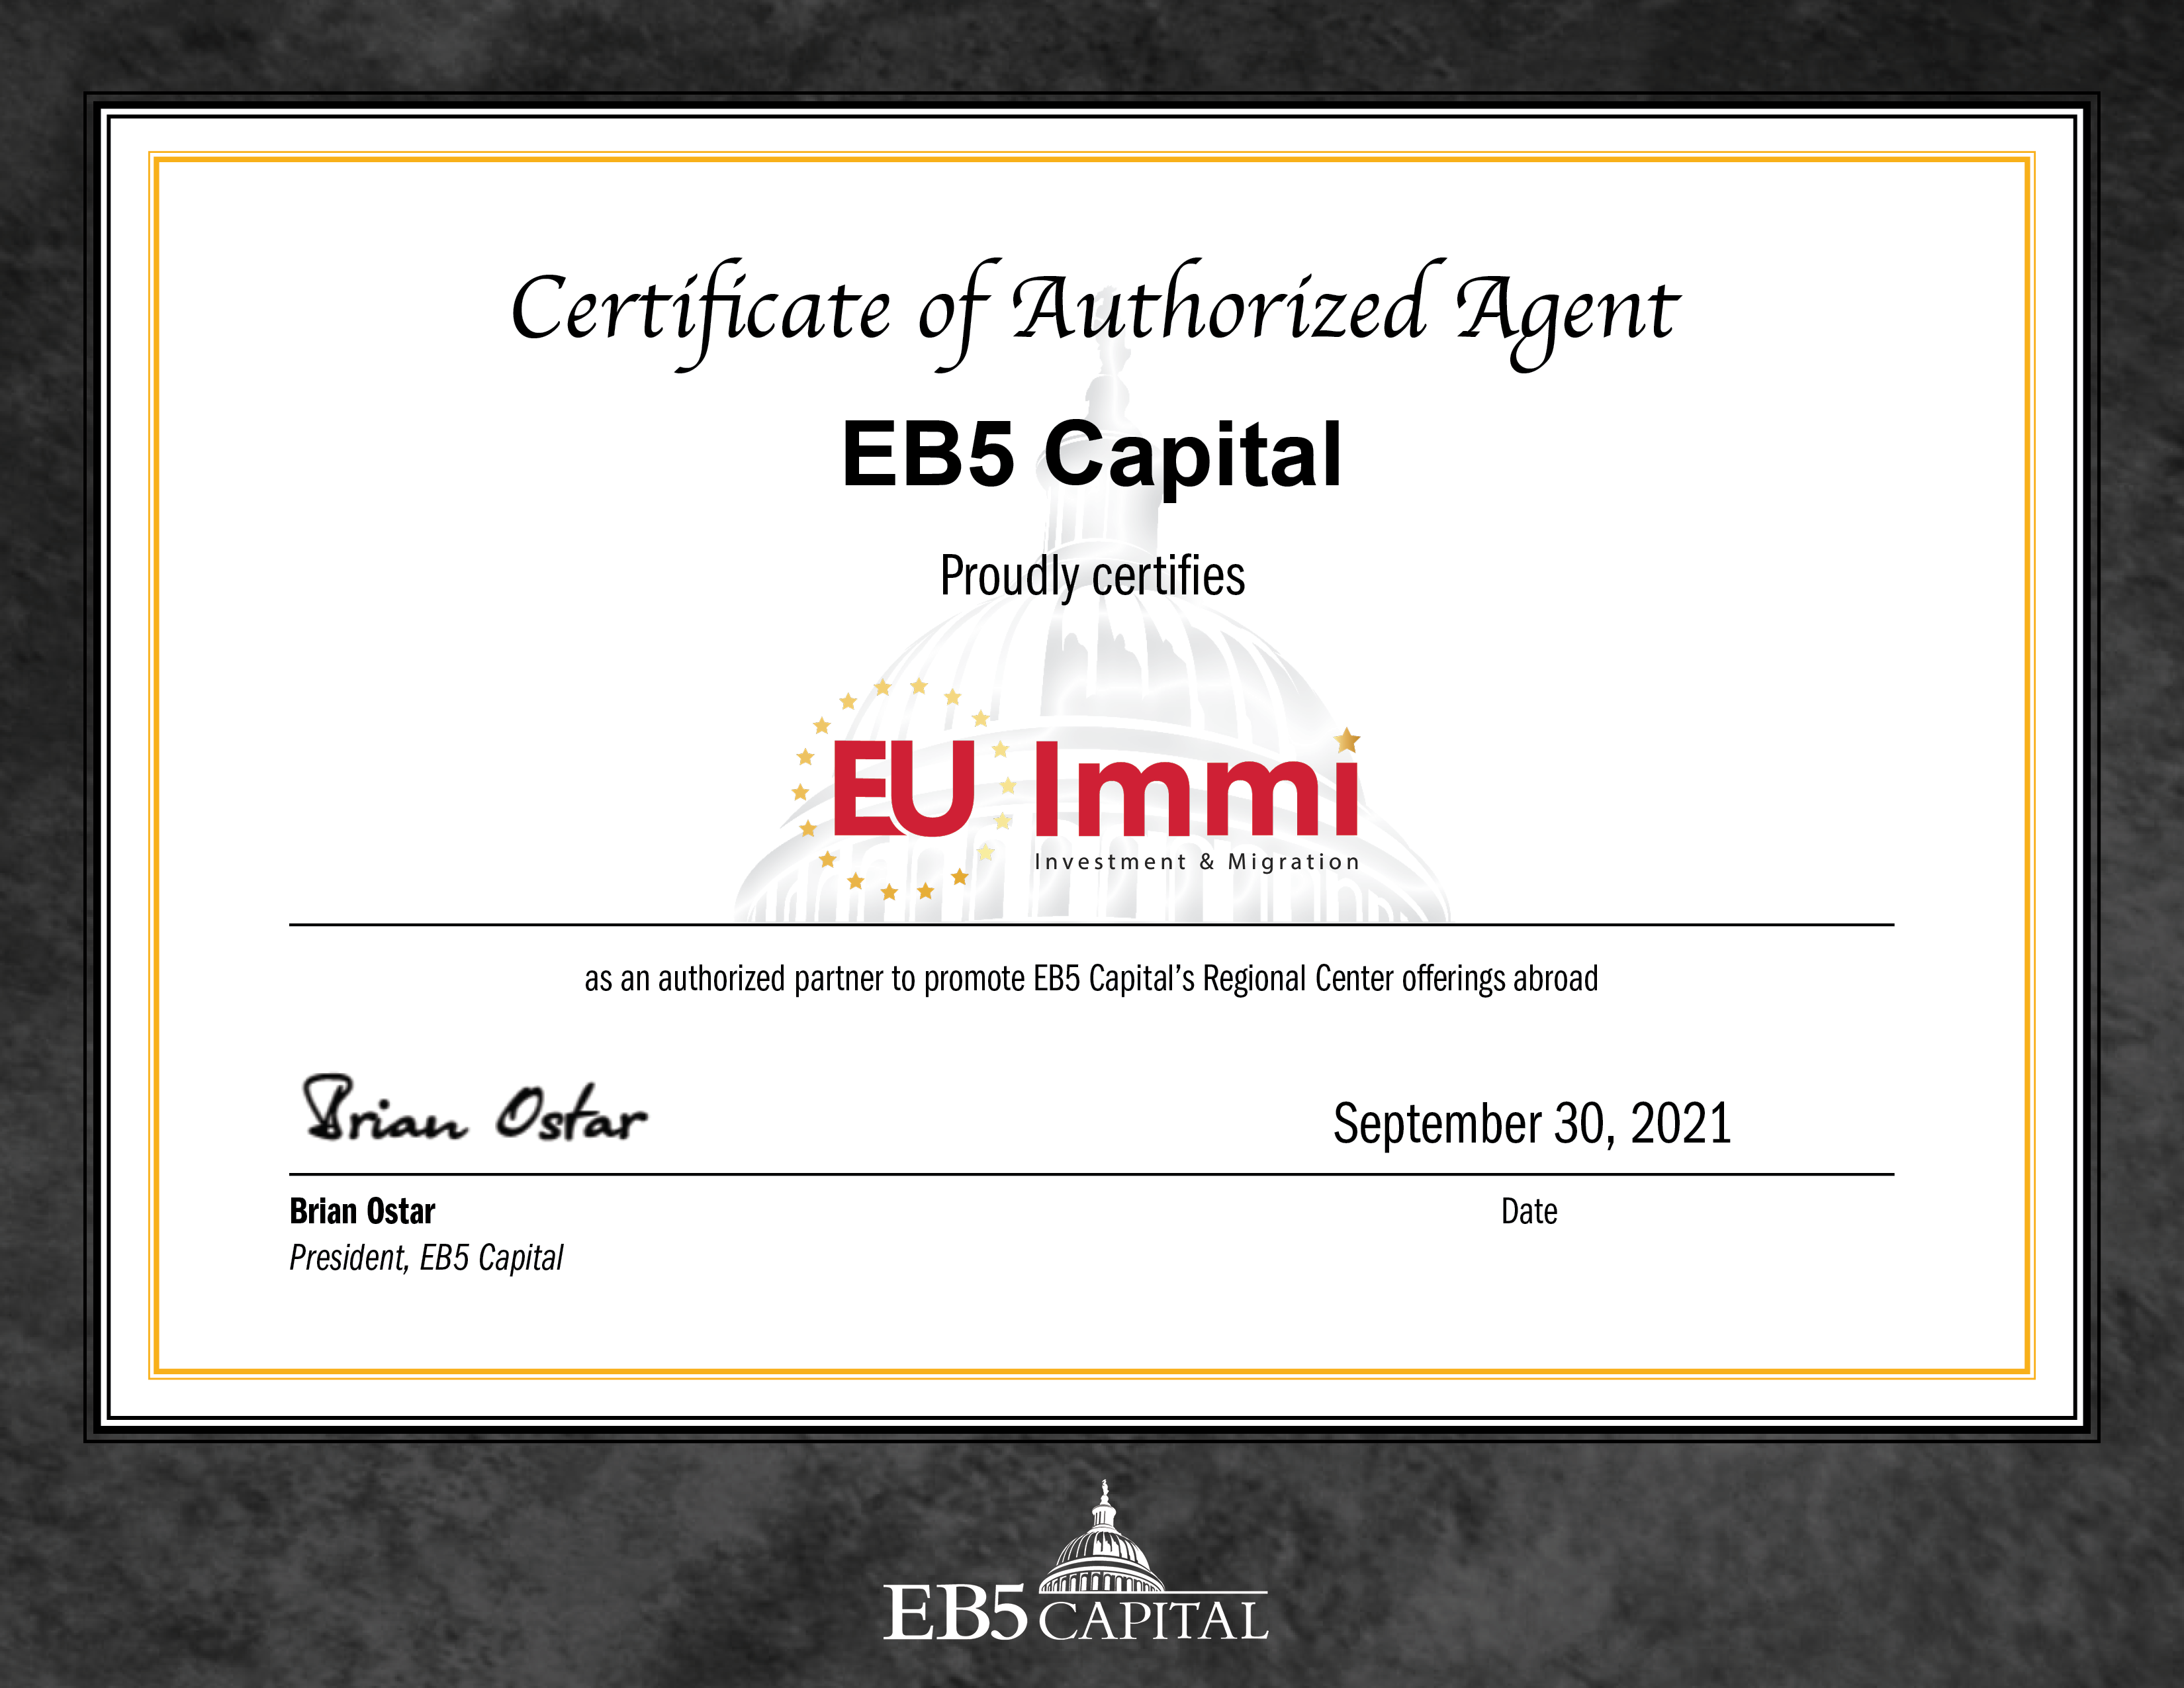 Chứng nhận EU Immi là đơn vị chính thức phân phối các dự án của EB5 Capital